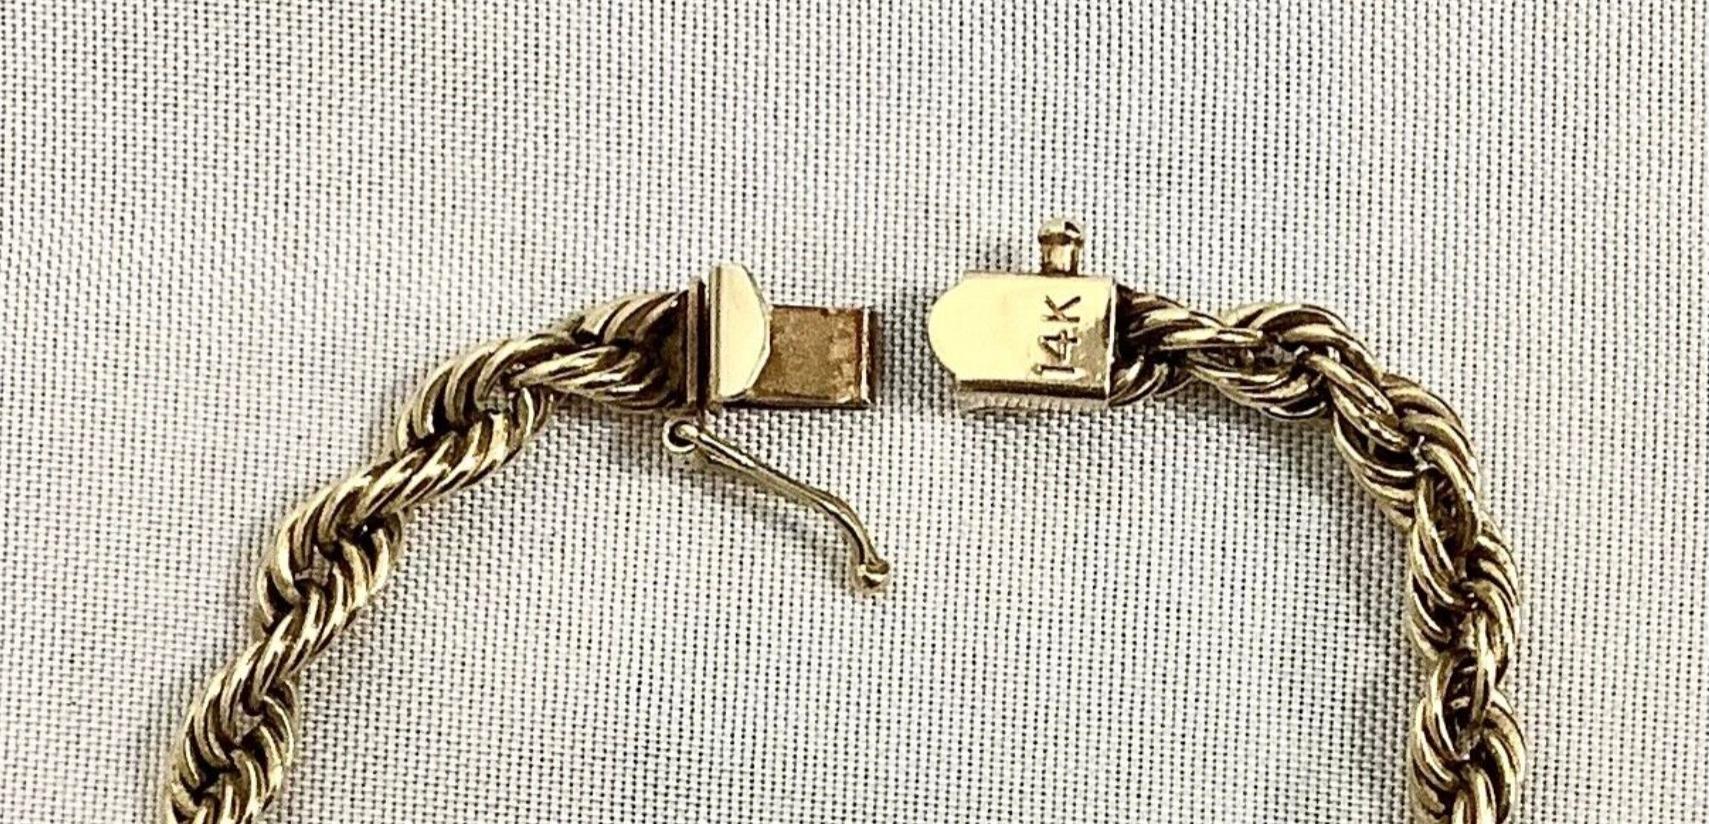 14k Gelbgold Twisted Rope Halskette. Sichere Schließe. Ungefähr 18 Gramm TW.  Ungefähr 26 Zoll lang. Gezeichnet 14k. 
